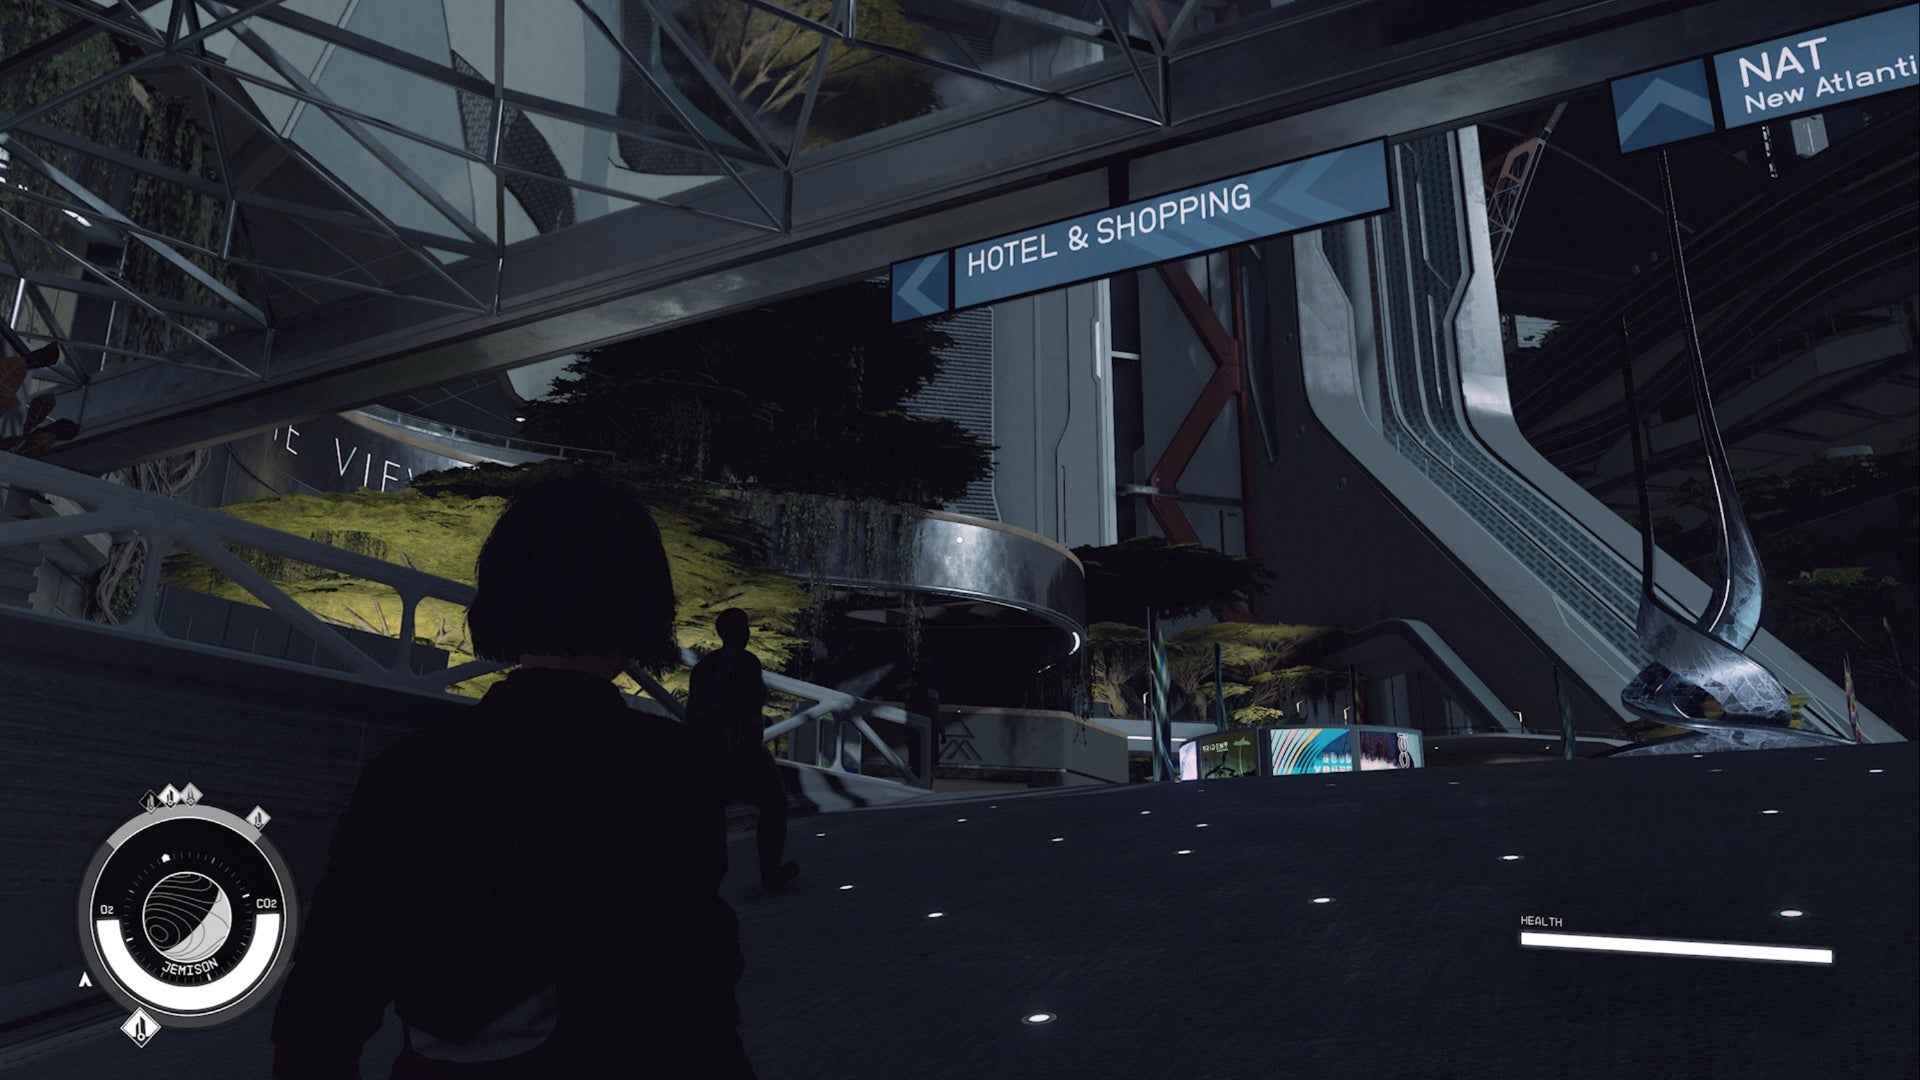 Entrada a Starfield New Atlantis, jugador mirando un hotel y un cartel comercial